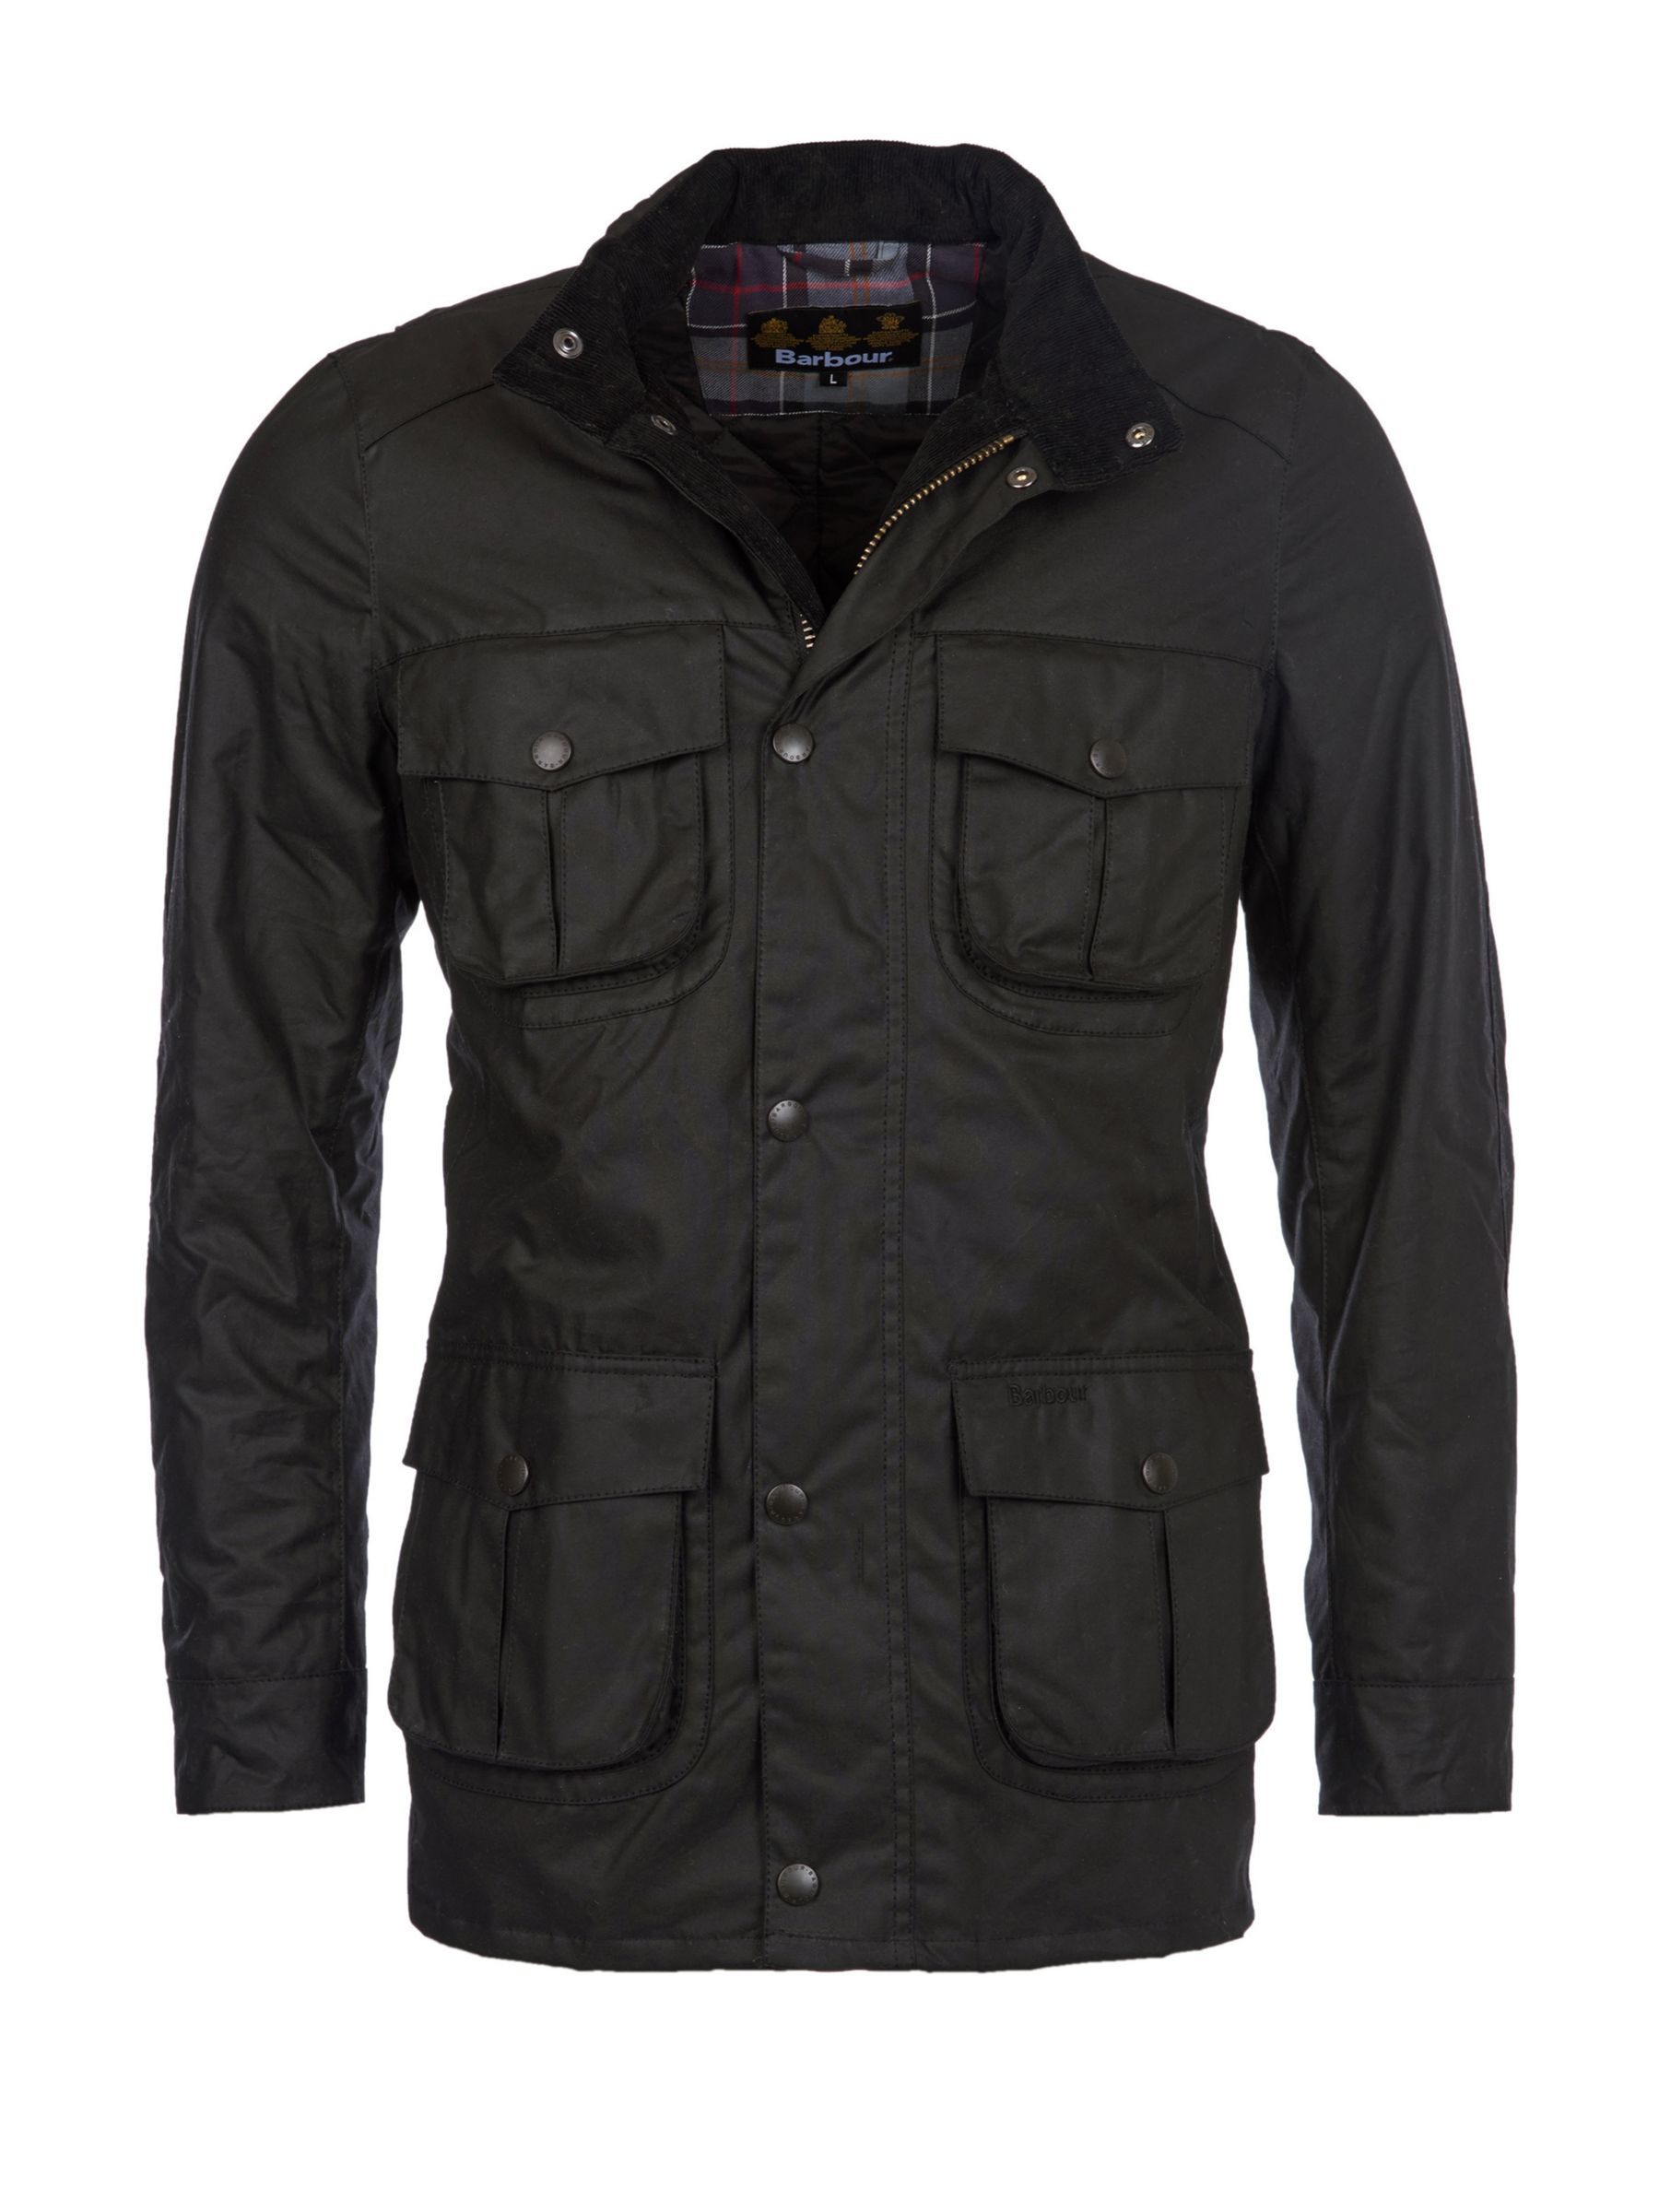 corbridge barbour jacket sale